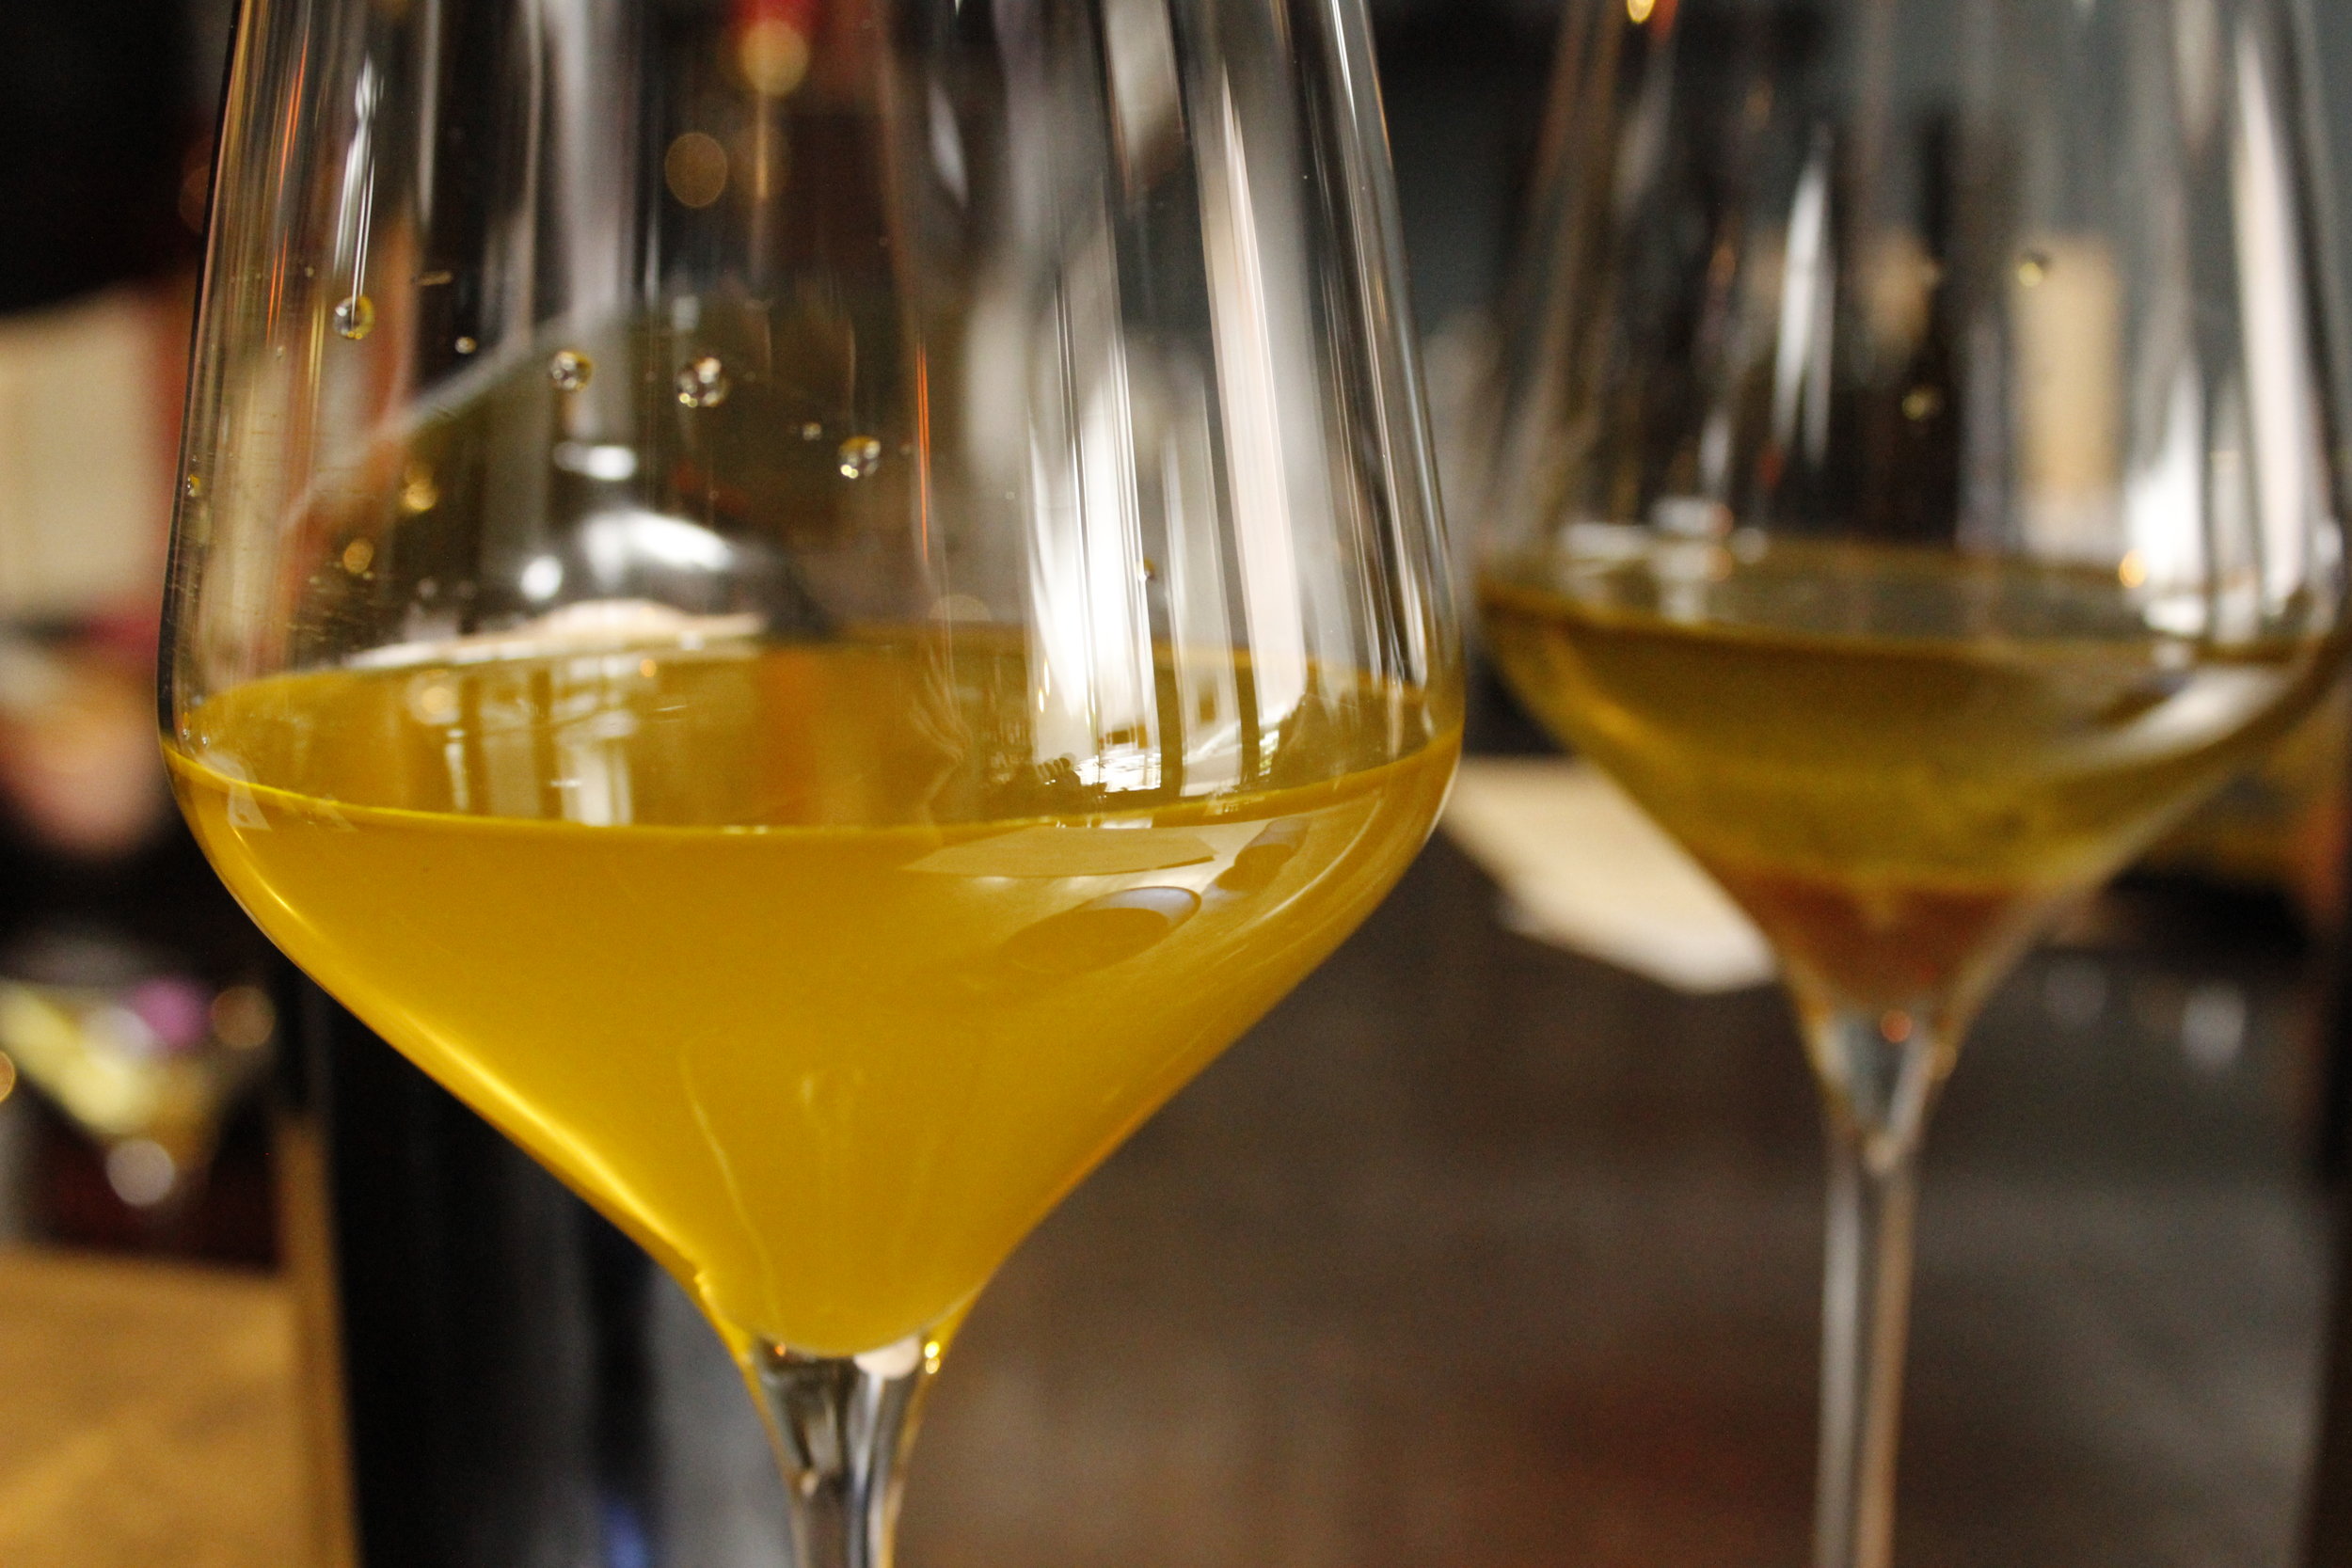  olive oil in wine glasses 